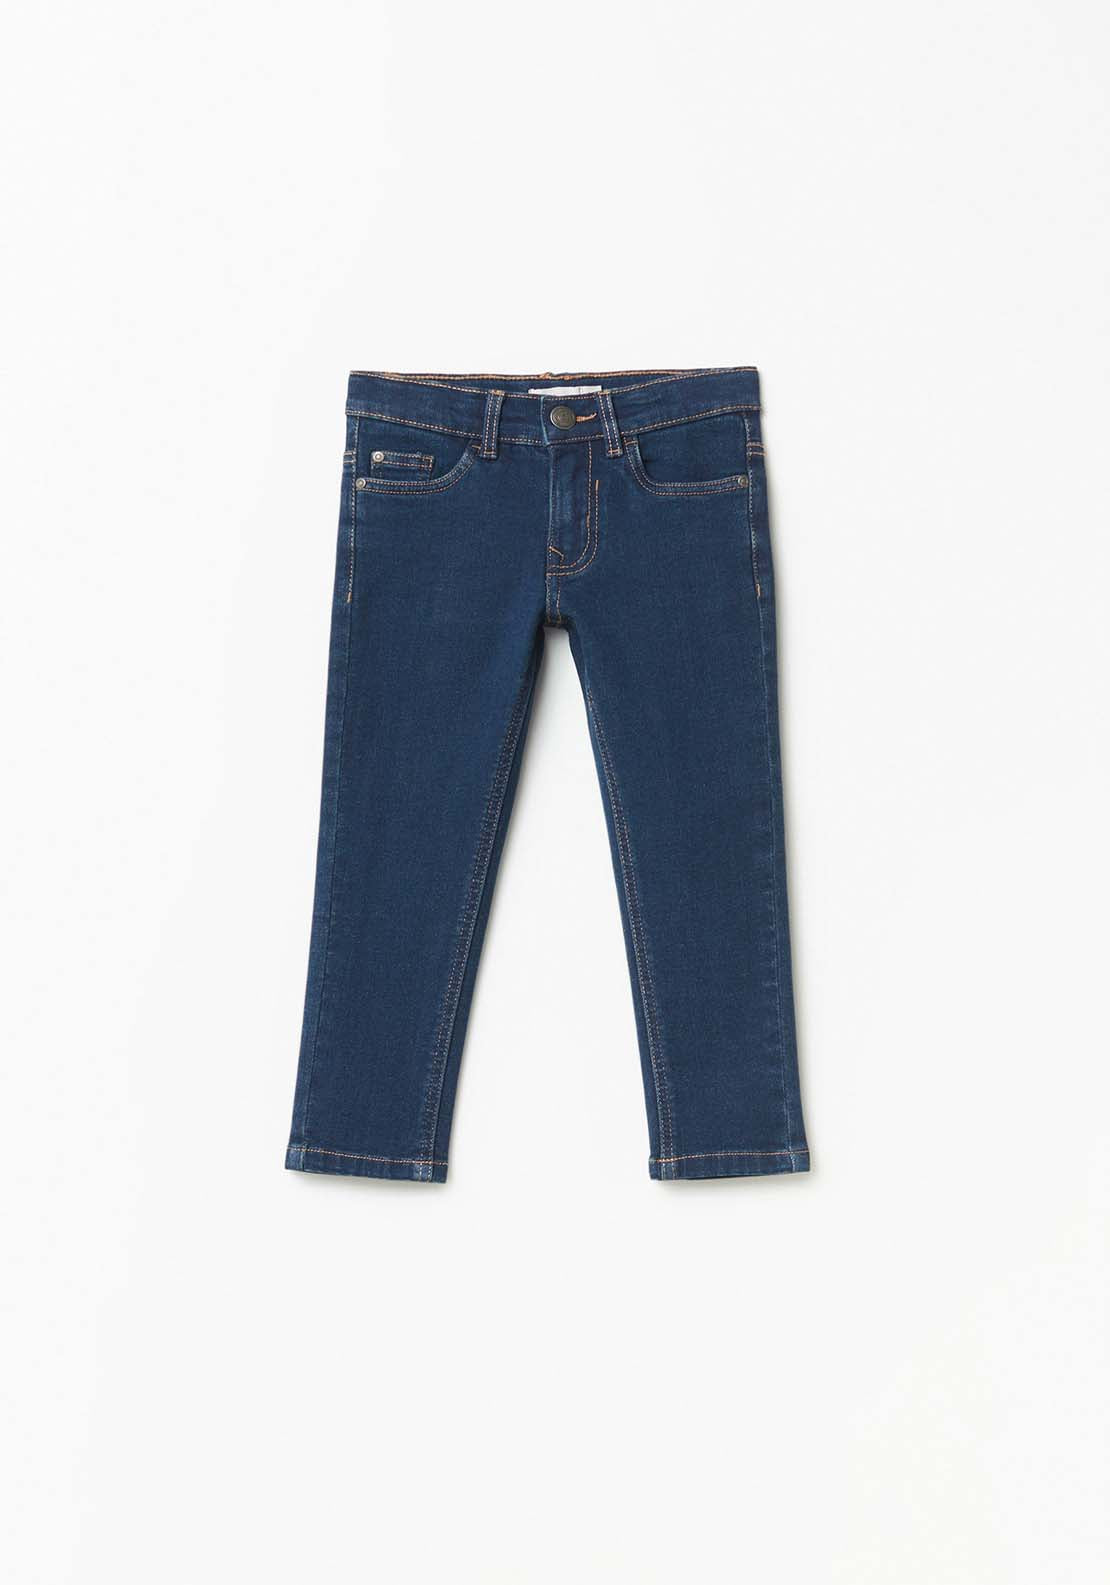 Sfera Denim Jeans - Dark Blue 1 Shaws Department Stores